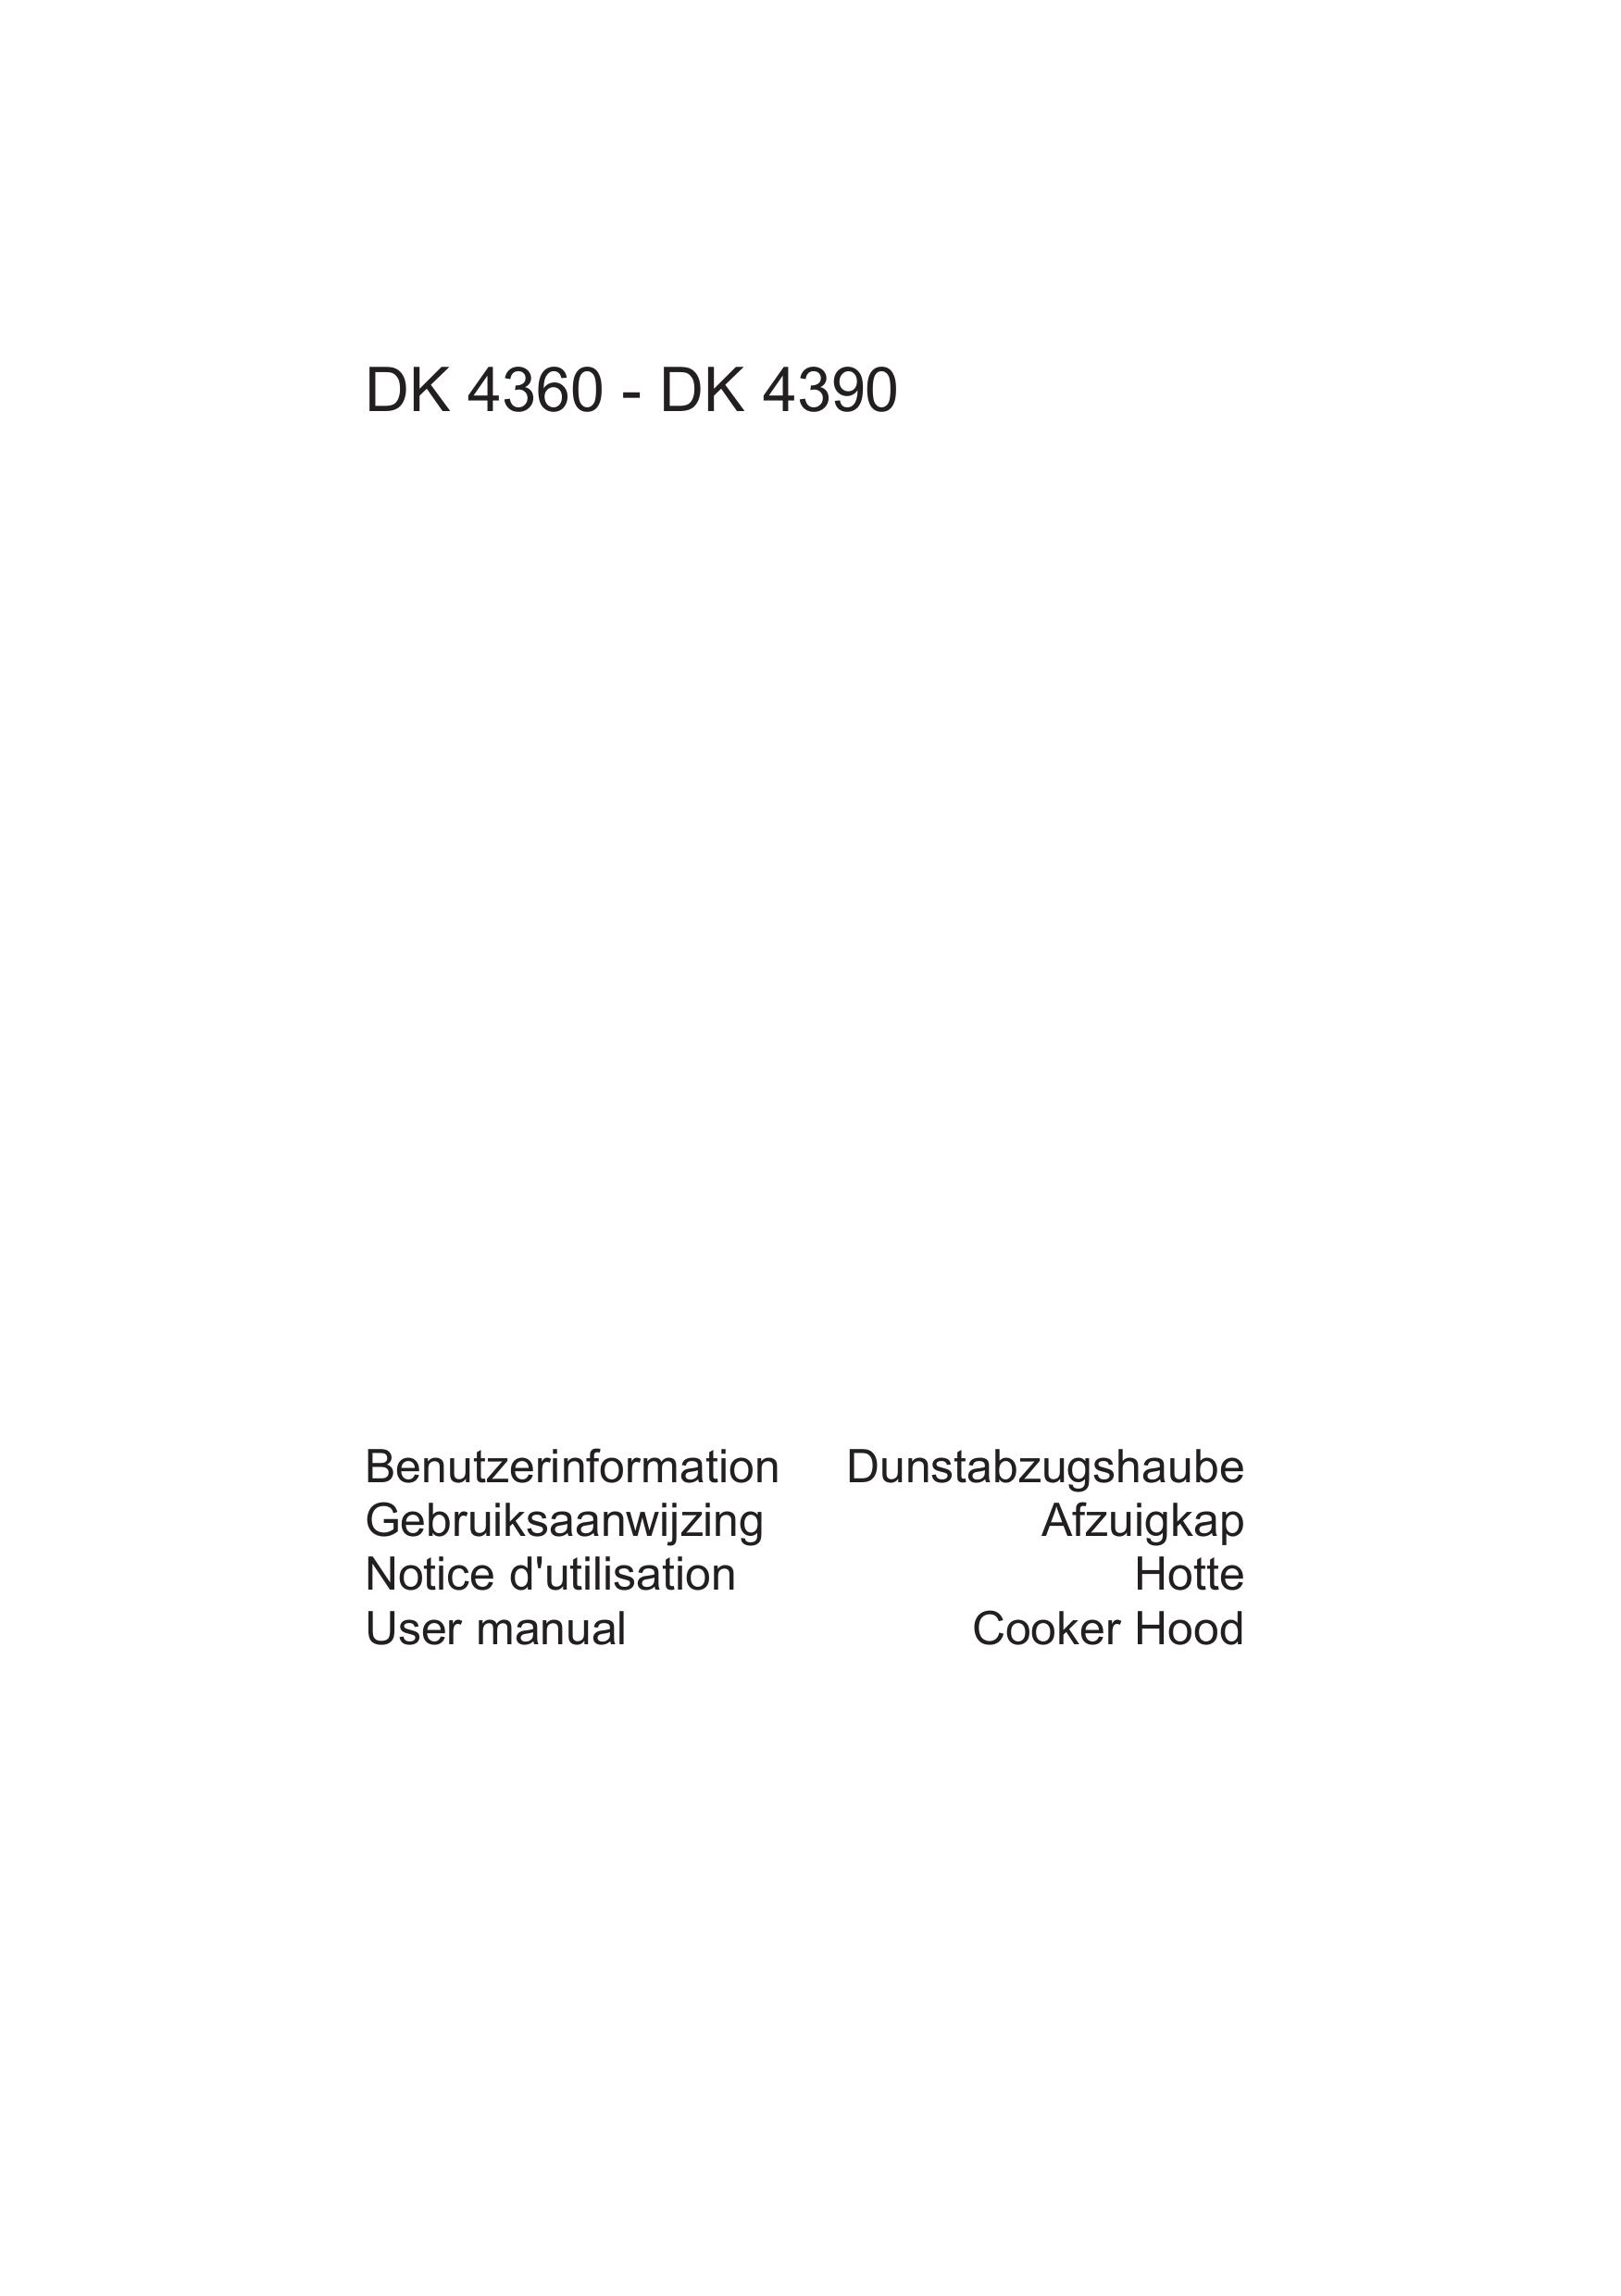 AEG DK 4360 Ventilation Hood User Manual